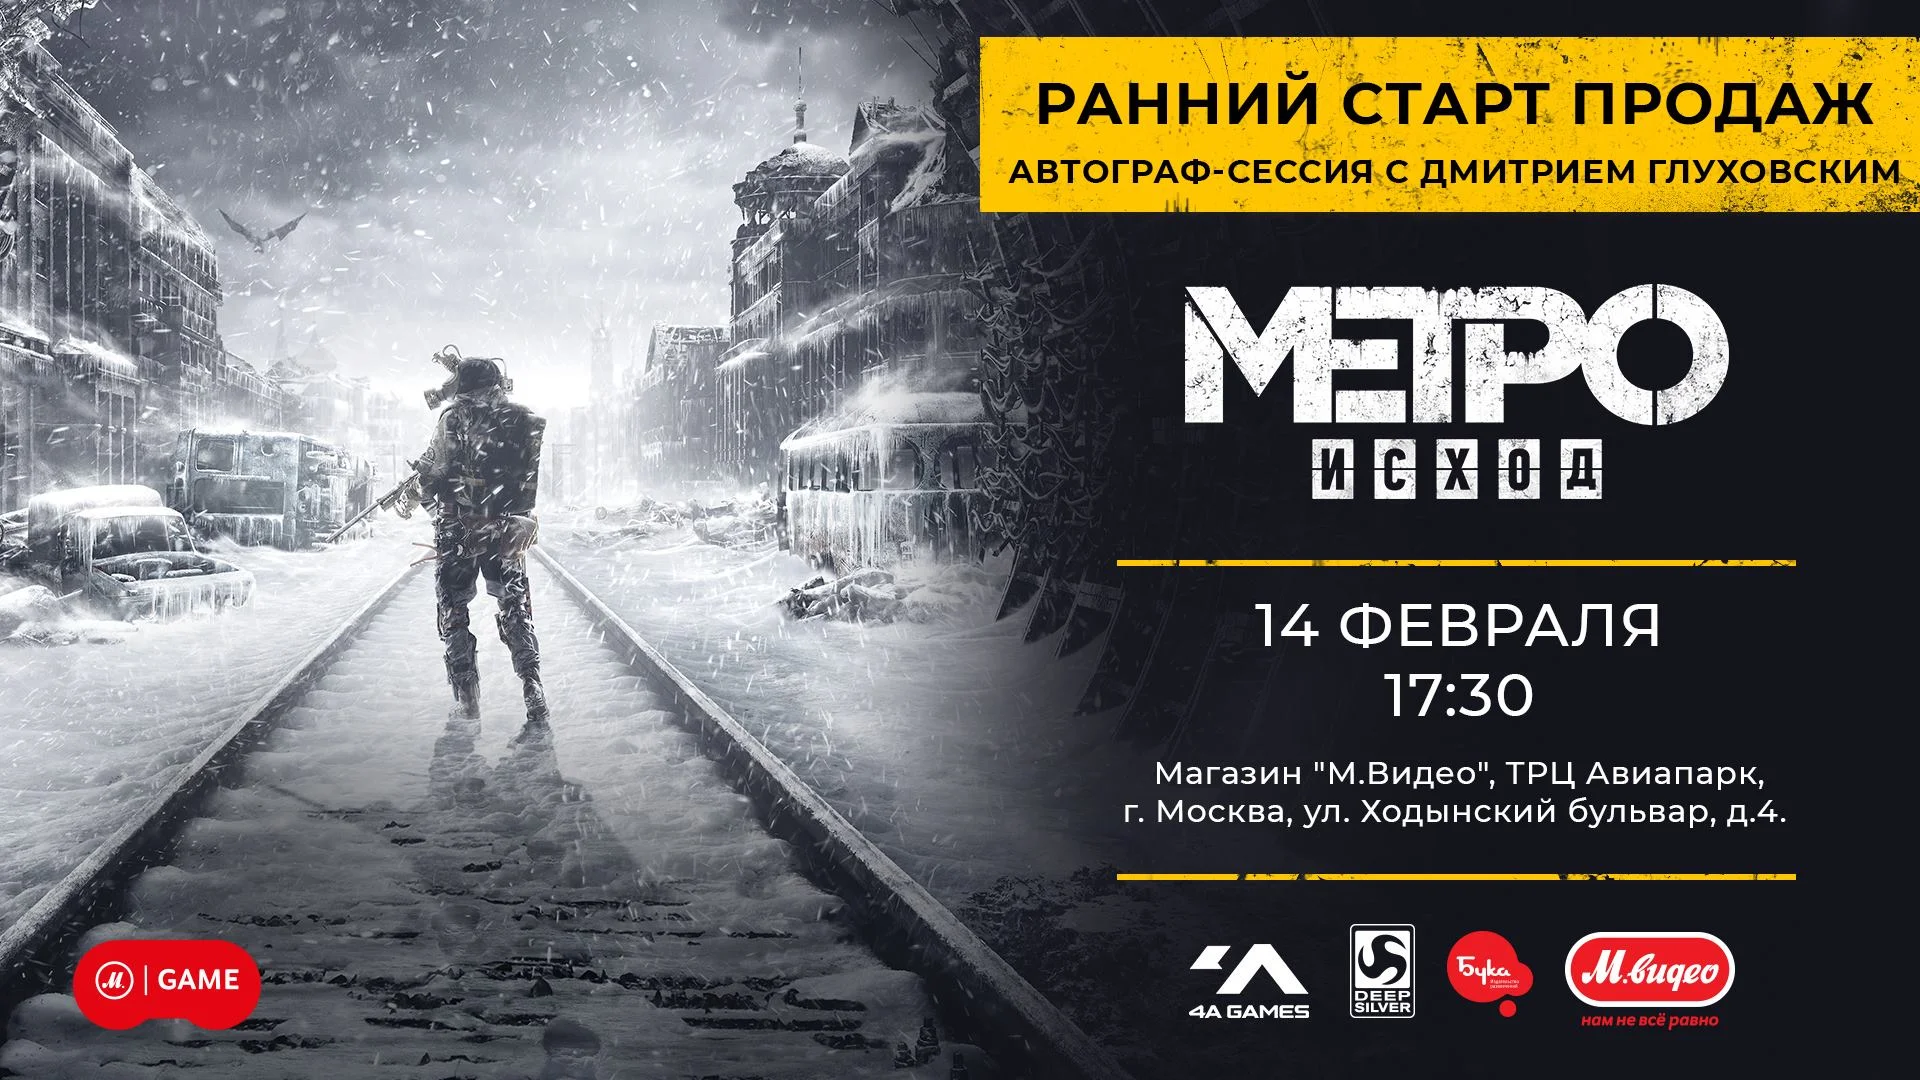 В Москве состоится ранний старт продаж Metro: Exodus с участием Дмитрия Глуховского - фото 1